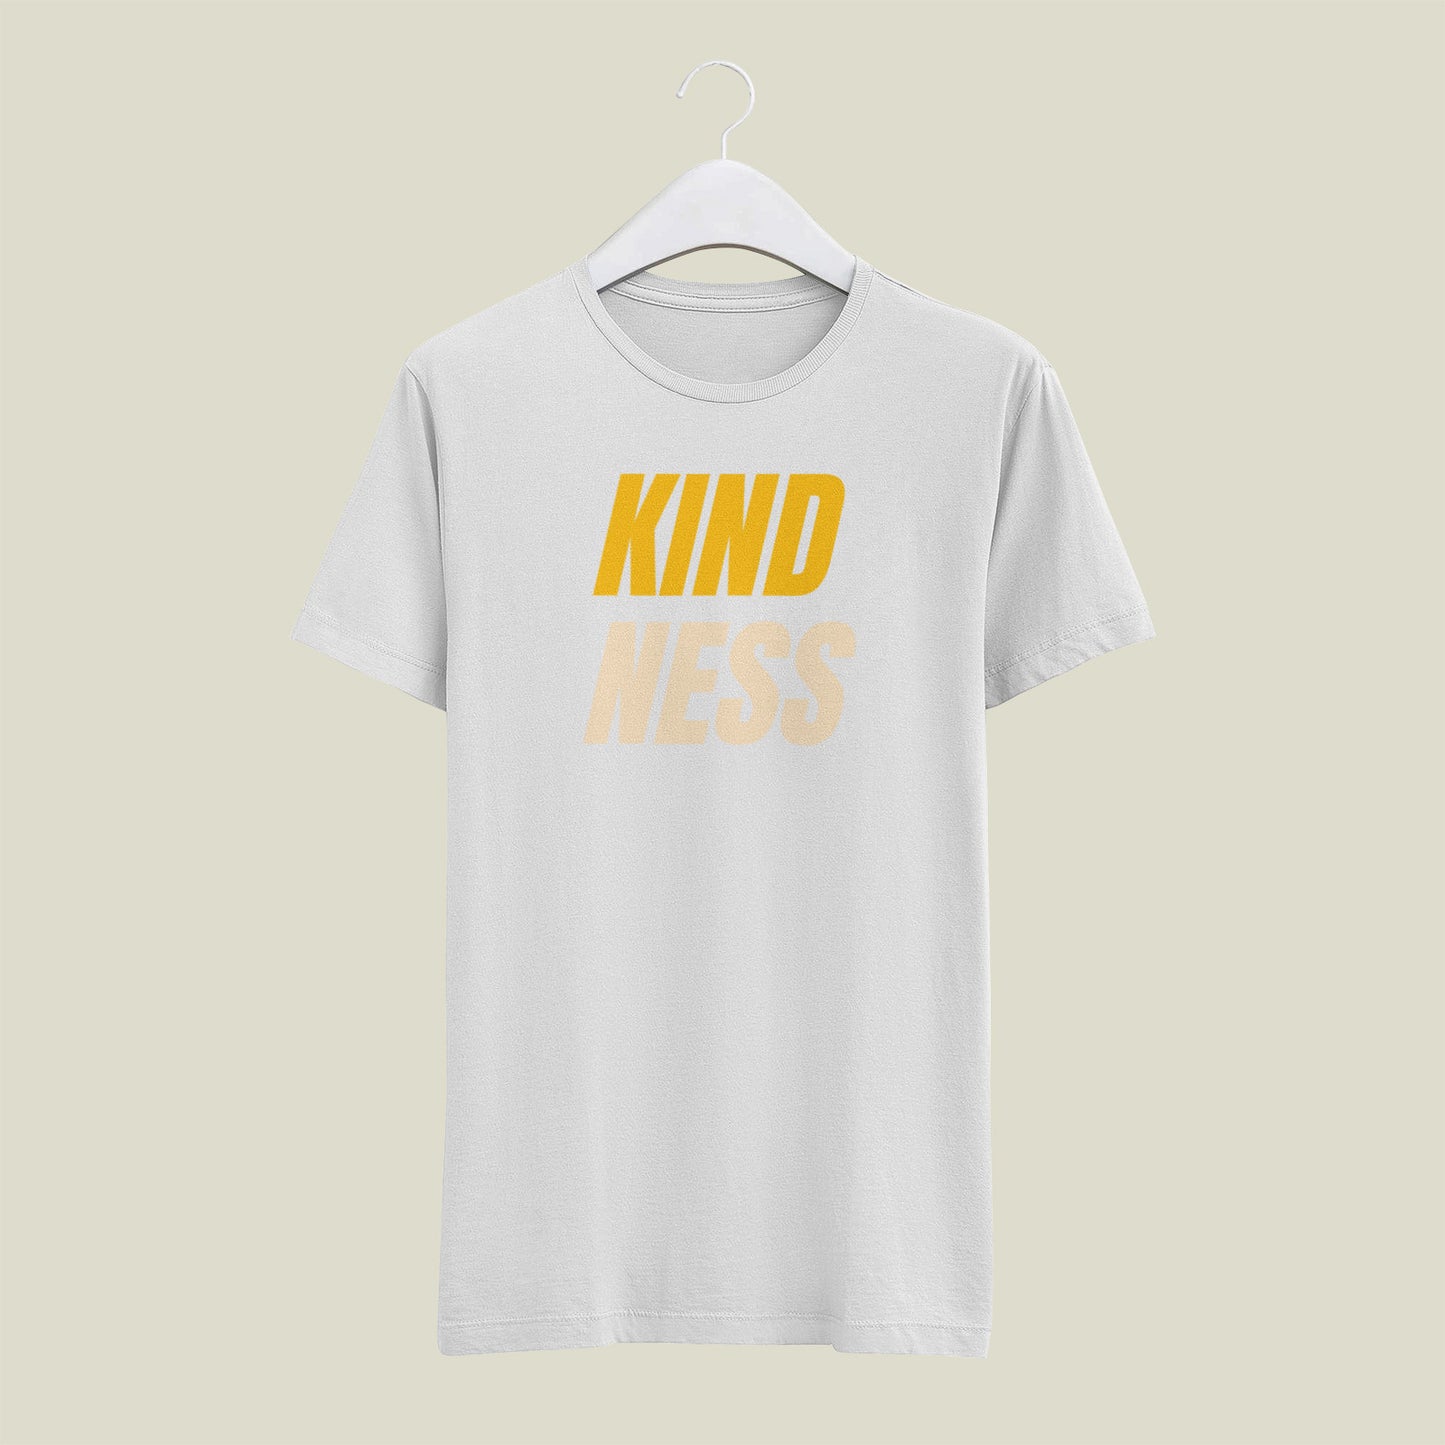 KINDNESS T - shirt